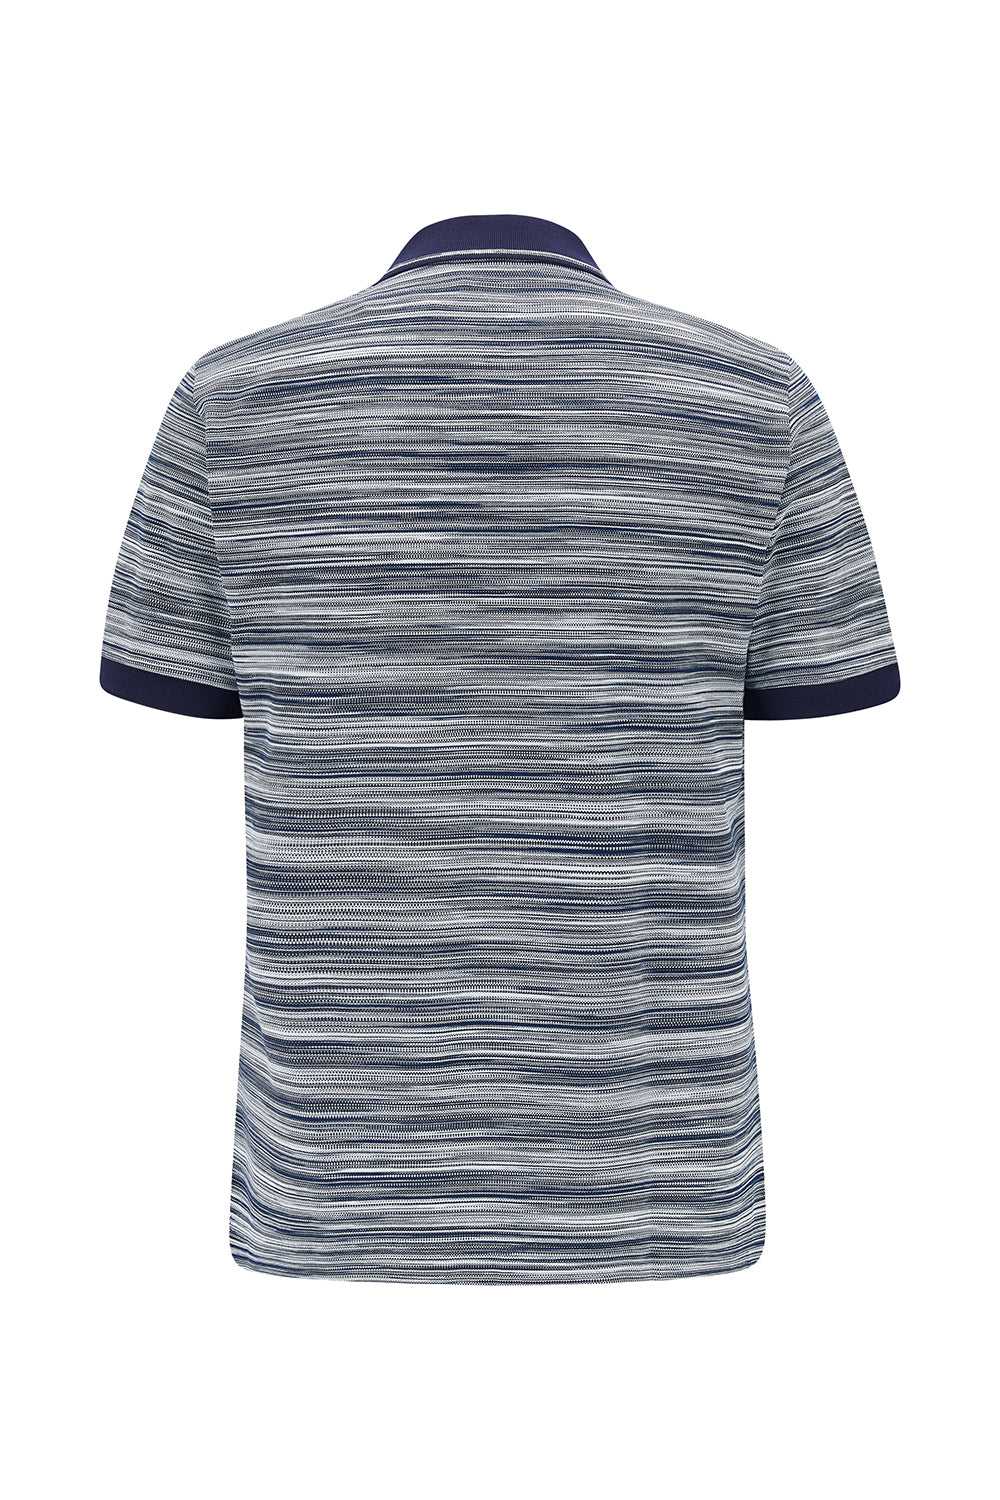 Missoni Men’s Space-dyed Stripe Polo Shirt Black/White - Back View